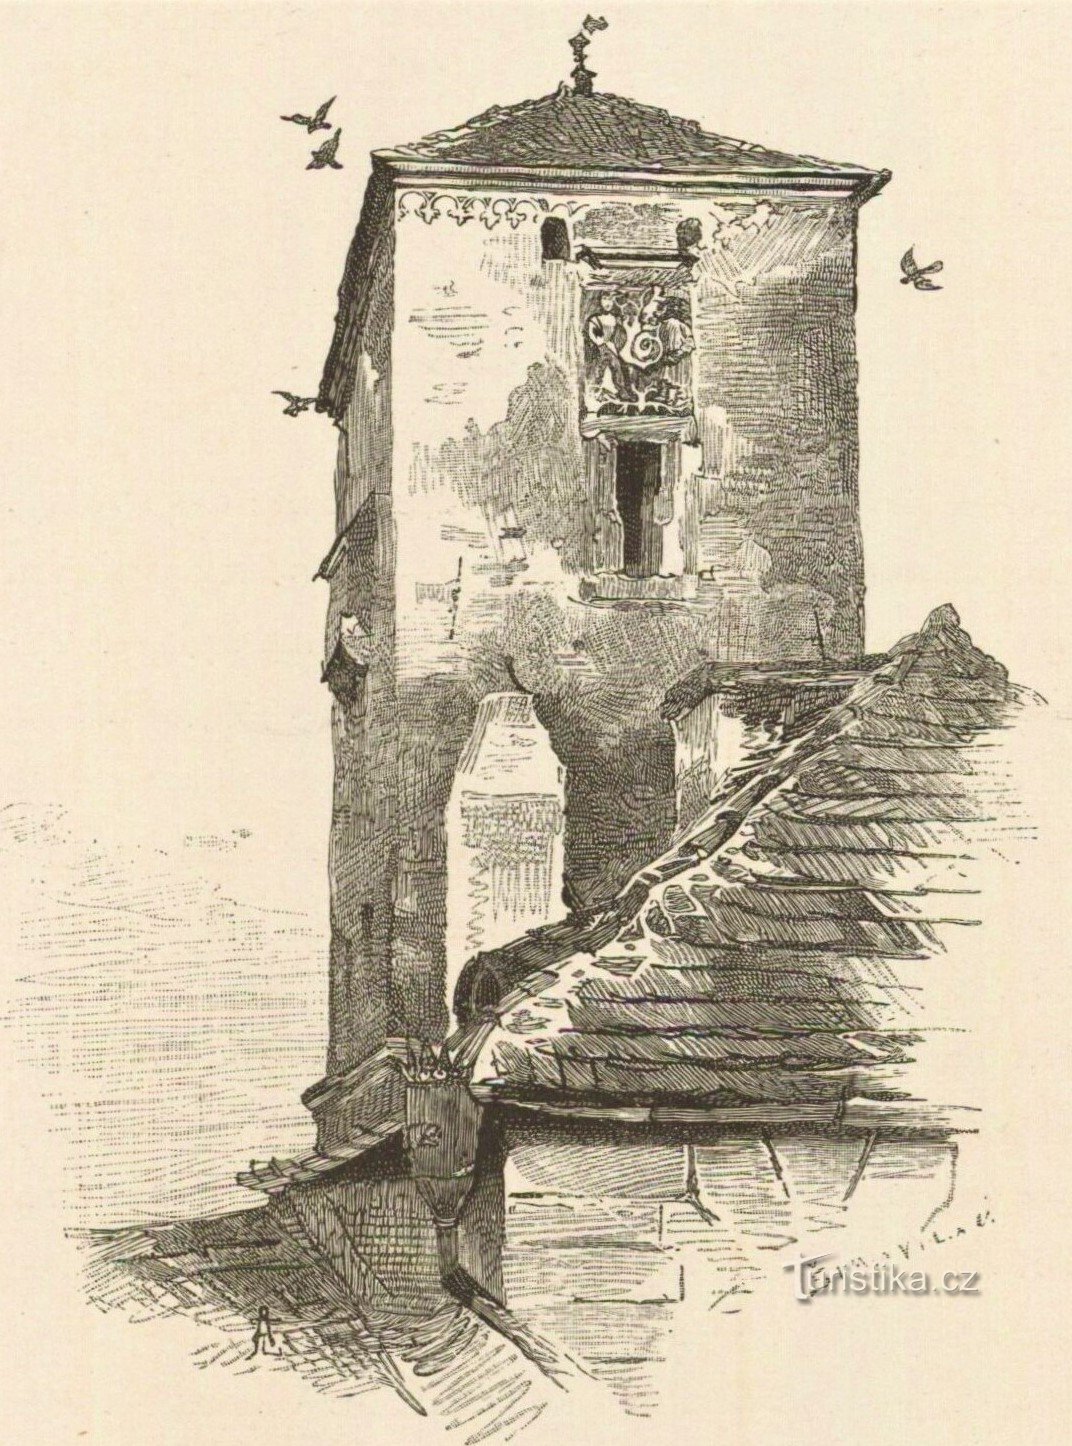 Kropáčka-torni 19-luvun lopun piirustuksessa